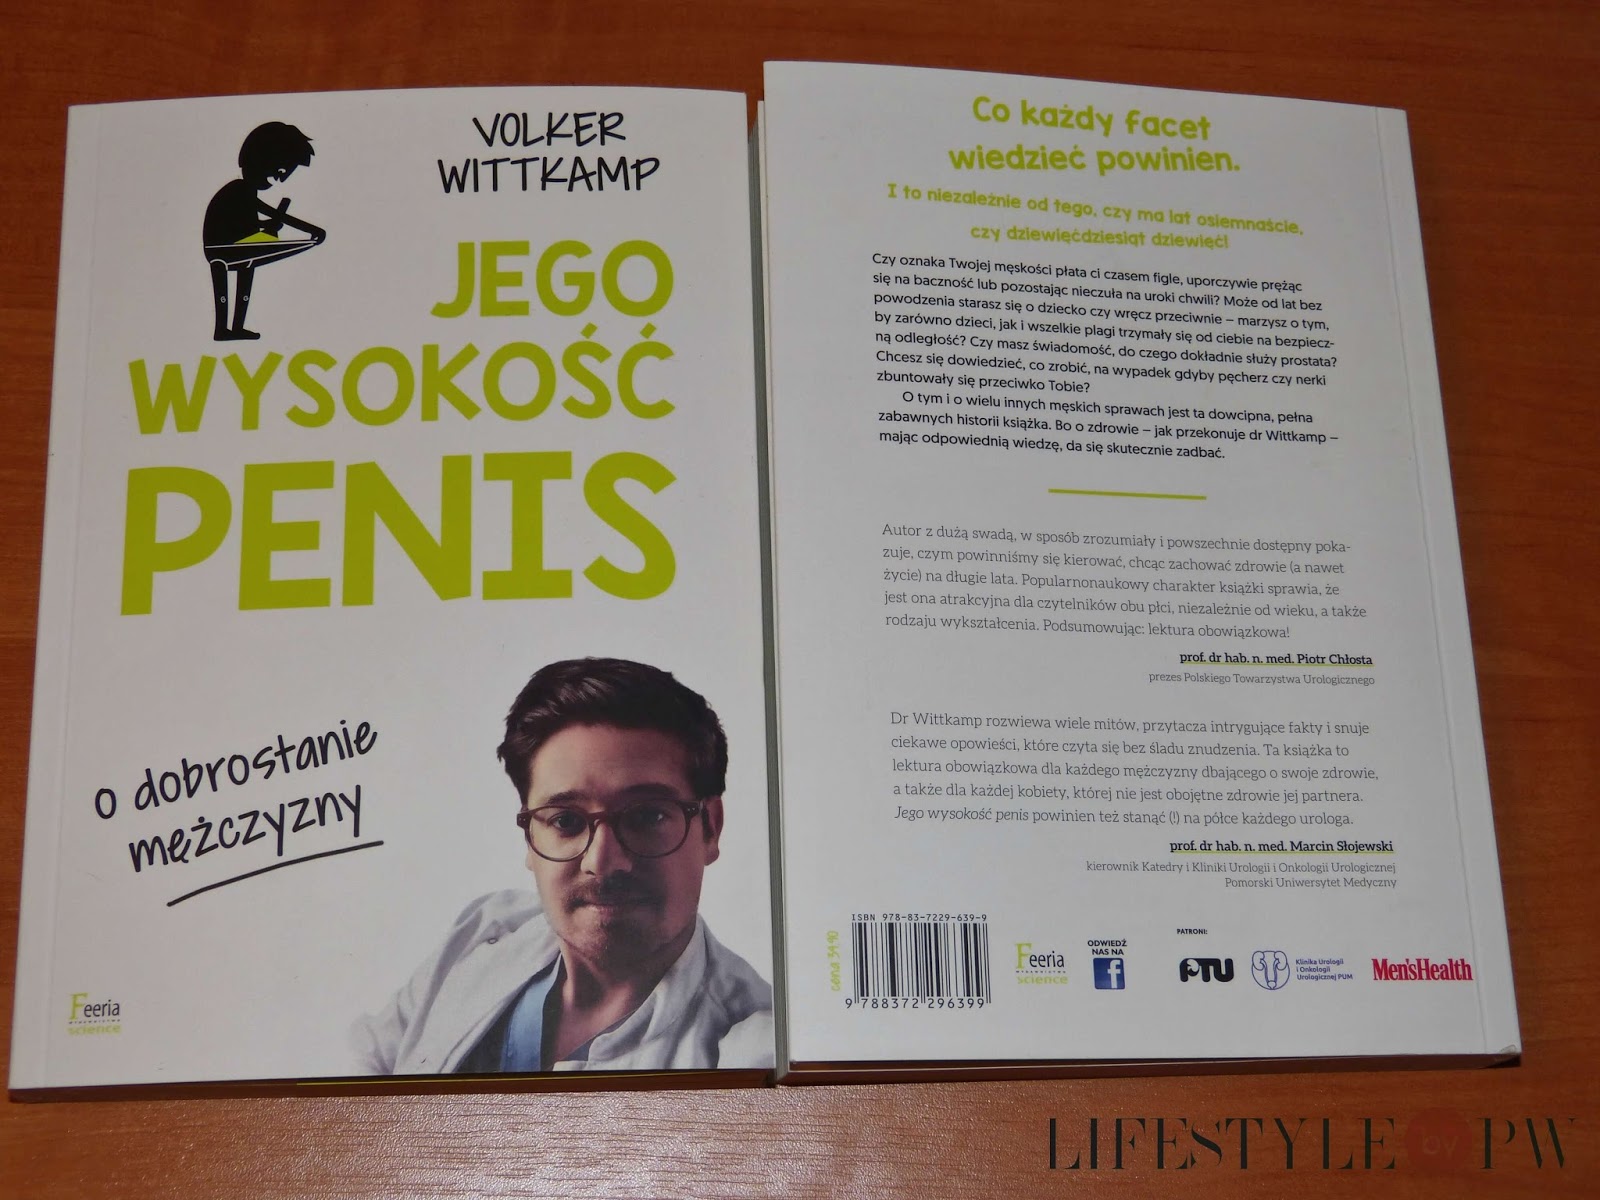 Czy kobiety lubia duze penisy?? - Na luzie - Forum dyskusyjne | pupzwolen.pl